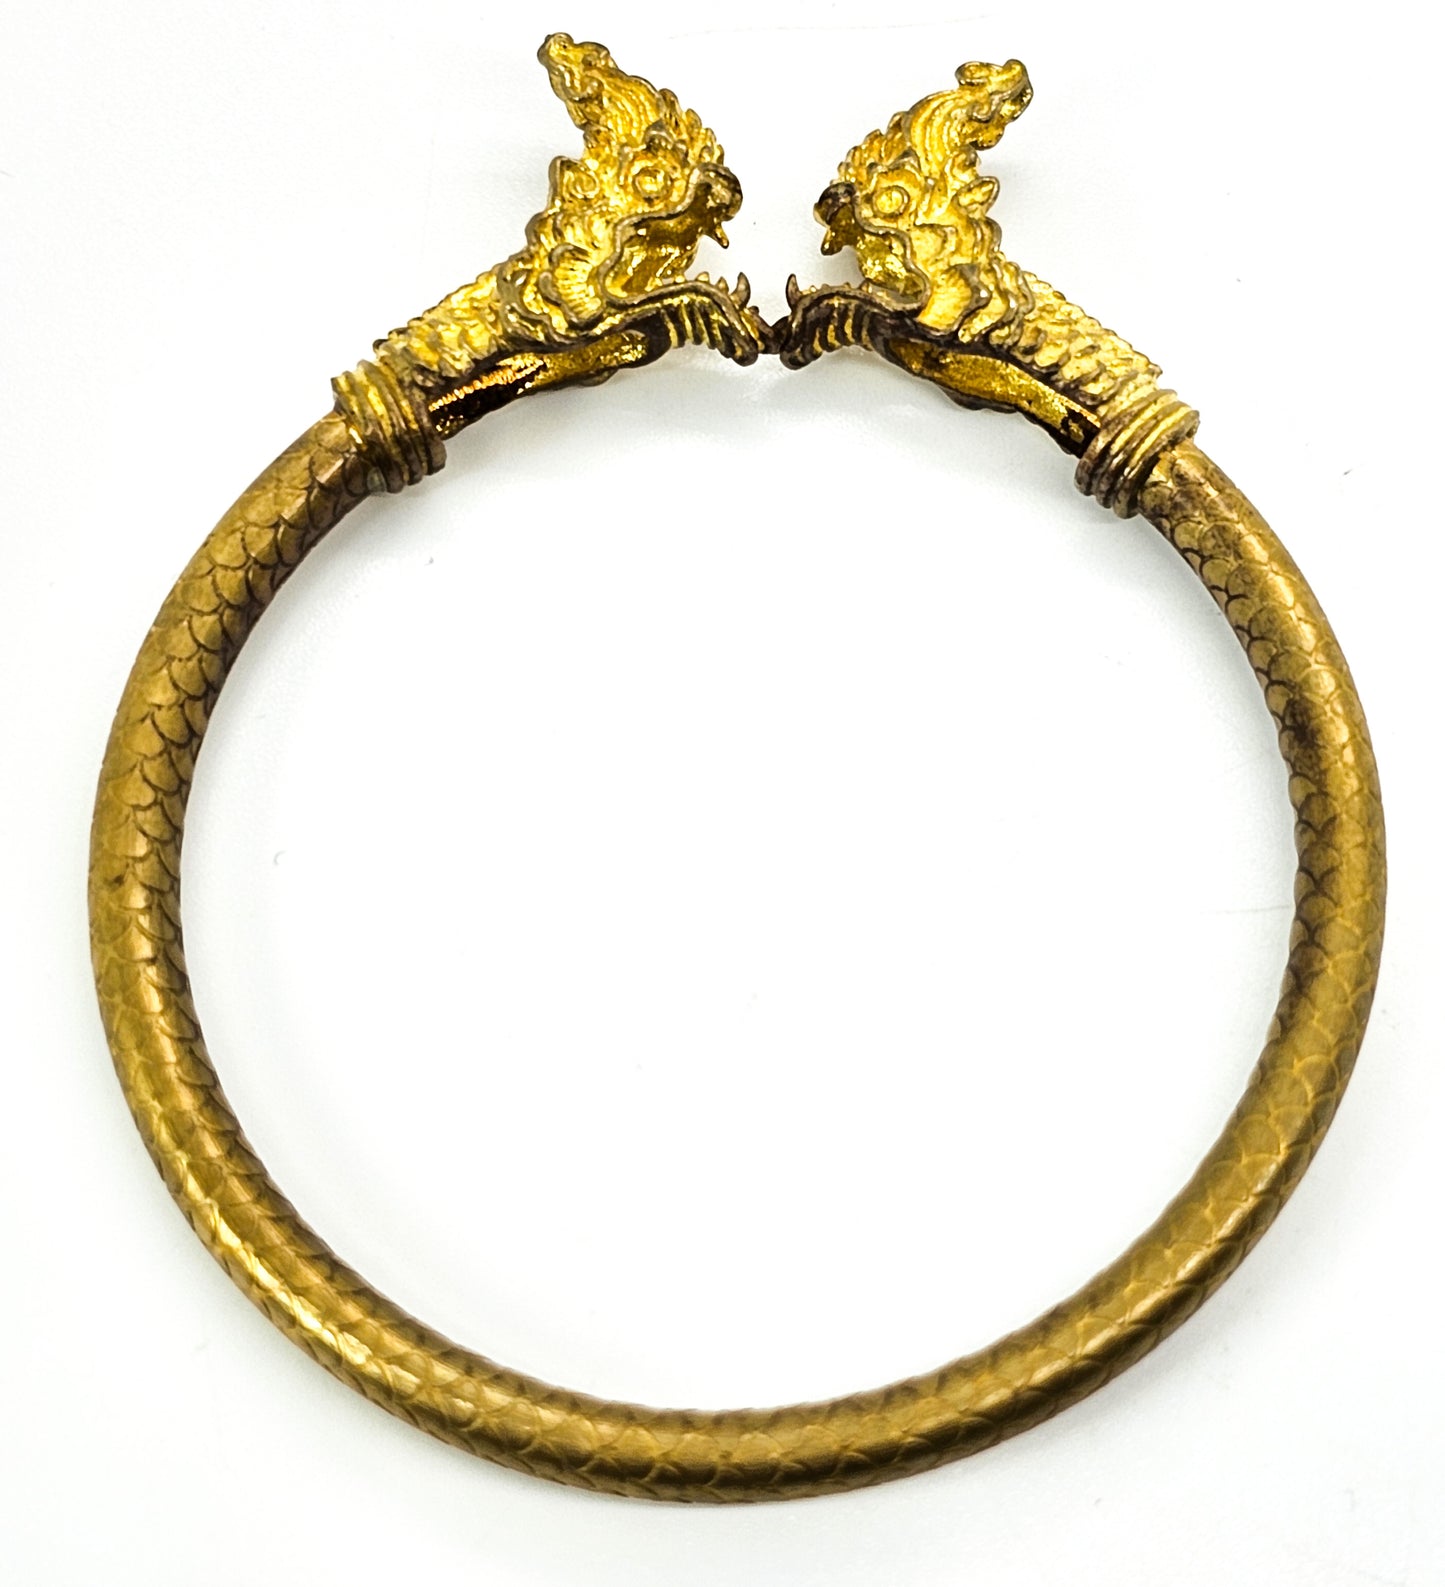 Naga Buddha Talisman Yant Thai gold toned bracelet amulet Lucky Charm